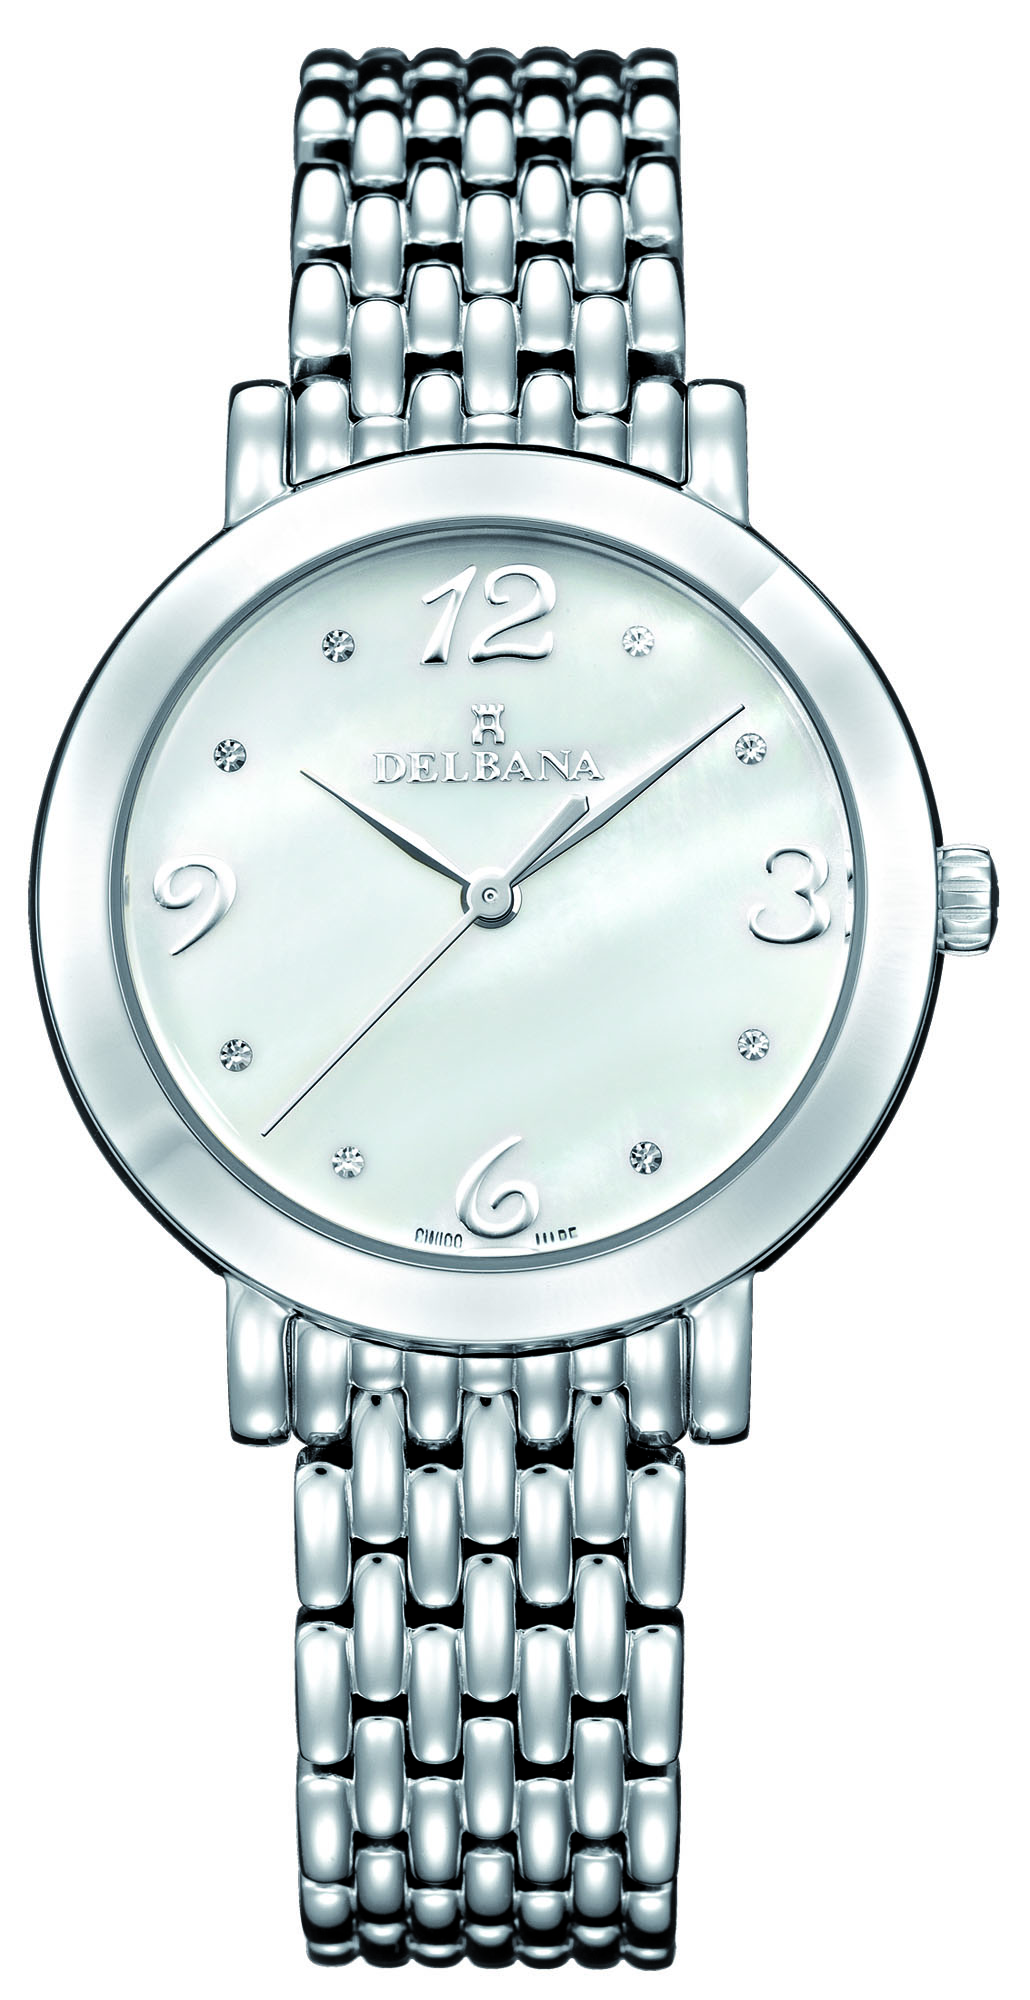 Andere plaatsen Astrolabium Gezond eten Delbana Villanova. Classic ladies' watch with stainless steel case.